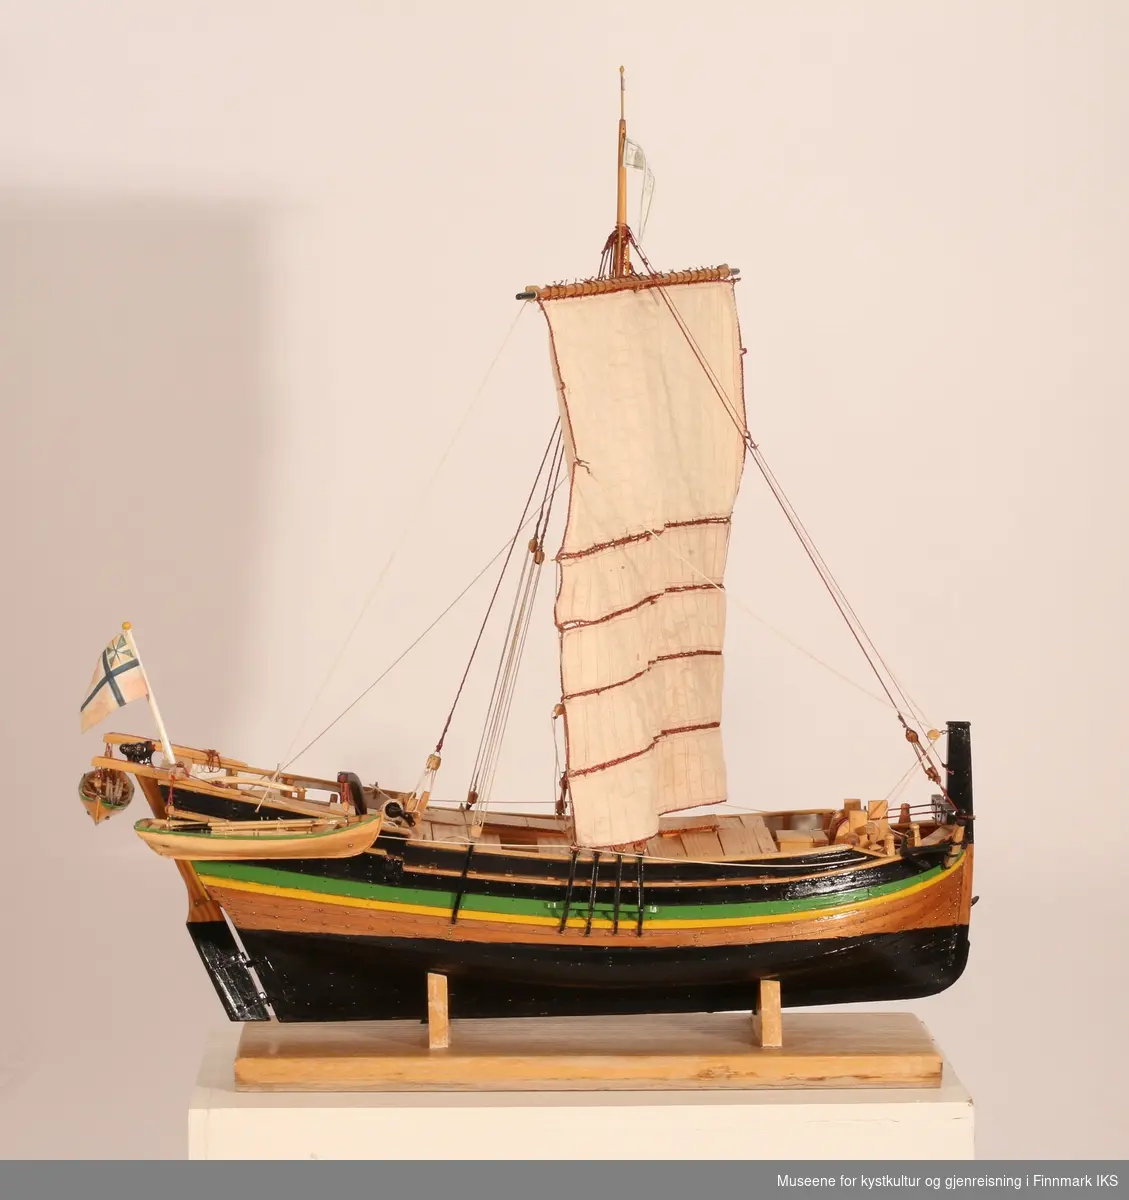 Helmodell av jekteskipet "Johanne af Ranen". Treskip, malt med sort, grønt og gult. Seil. Flagg - kan være Norsk unionsflagg 1844-1899.